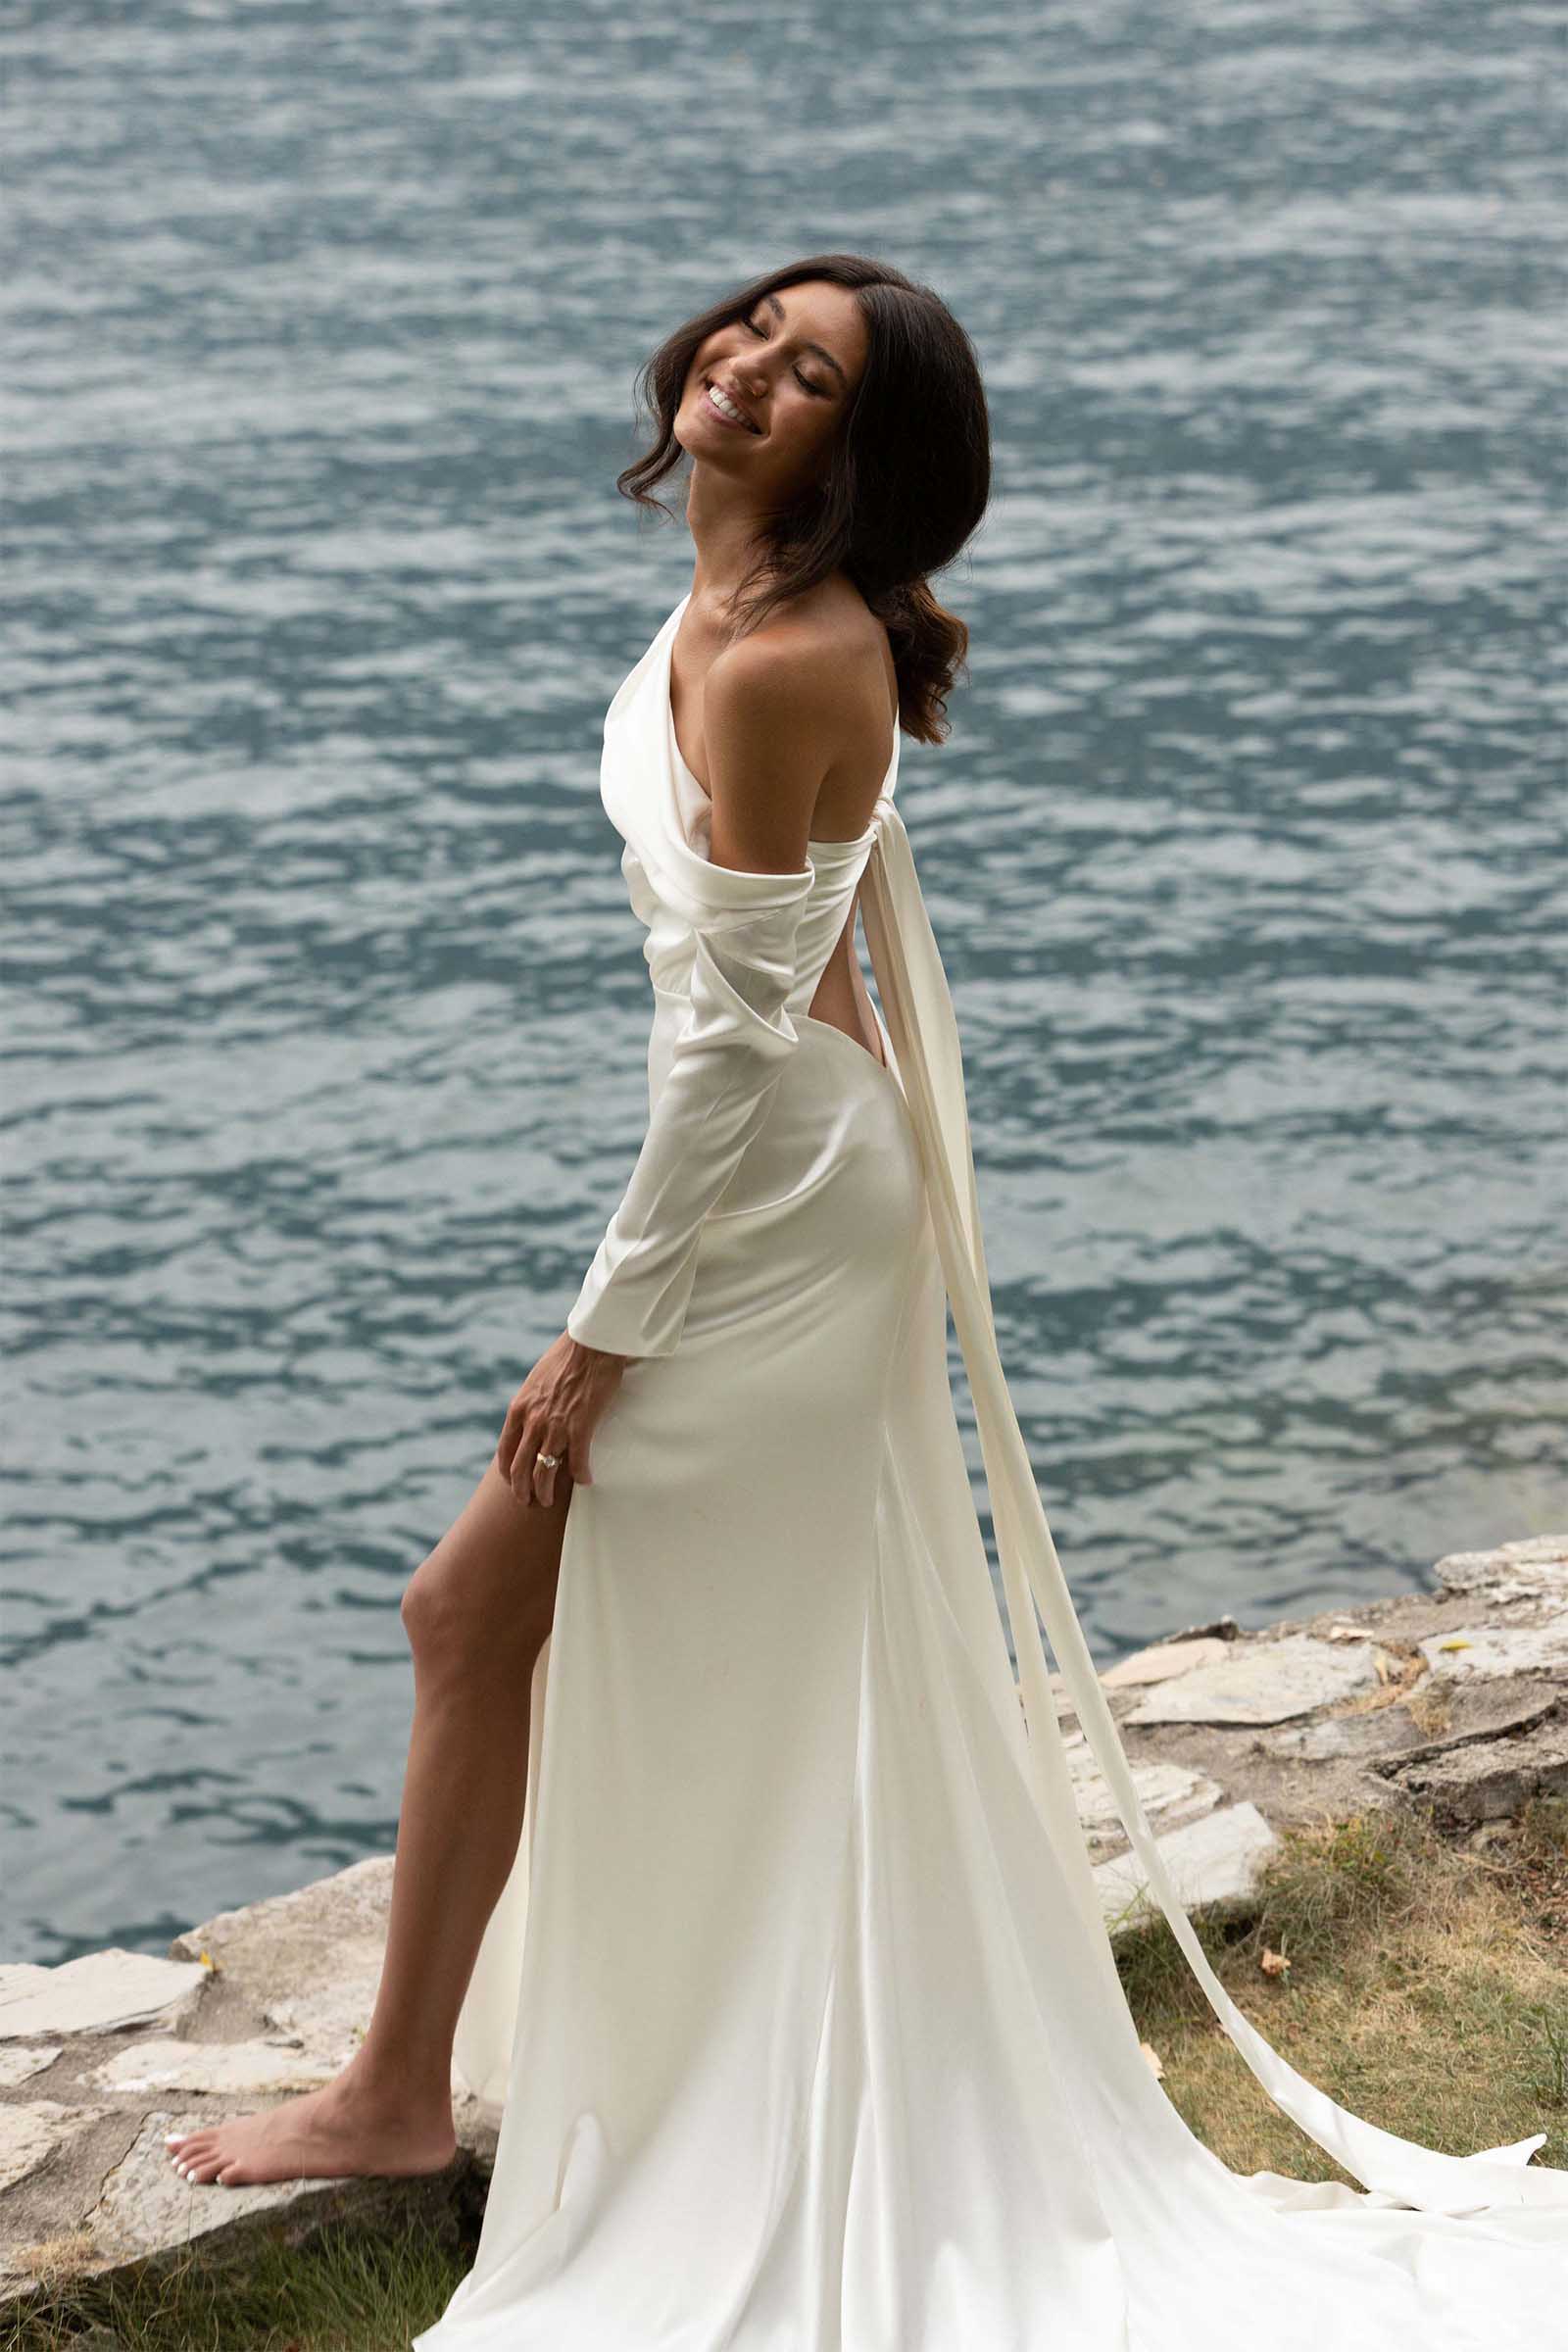 2020 Vintage Lace Bride Wedding Dress Long Sleeves – loveangeldress